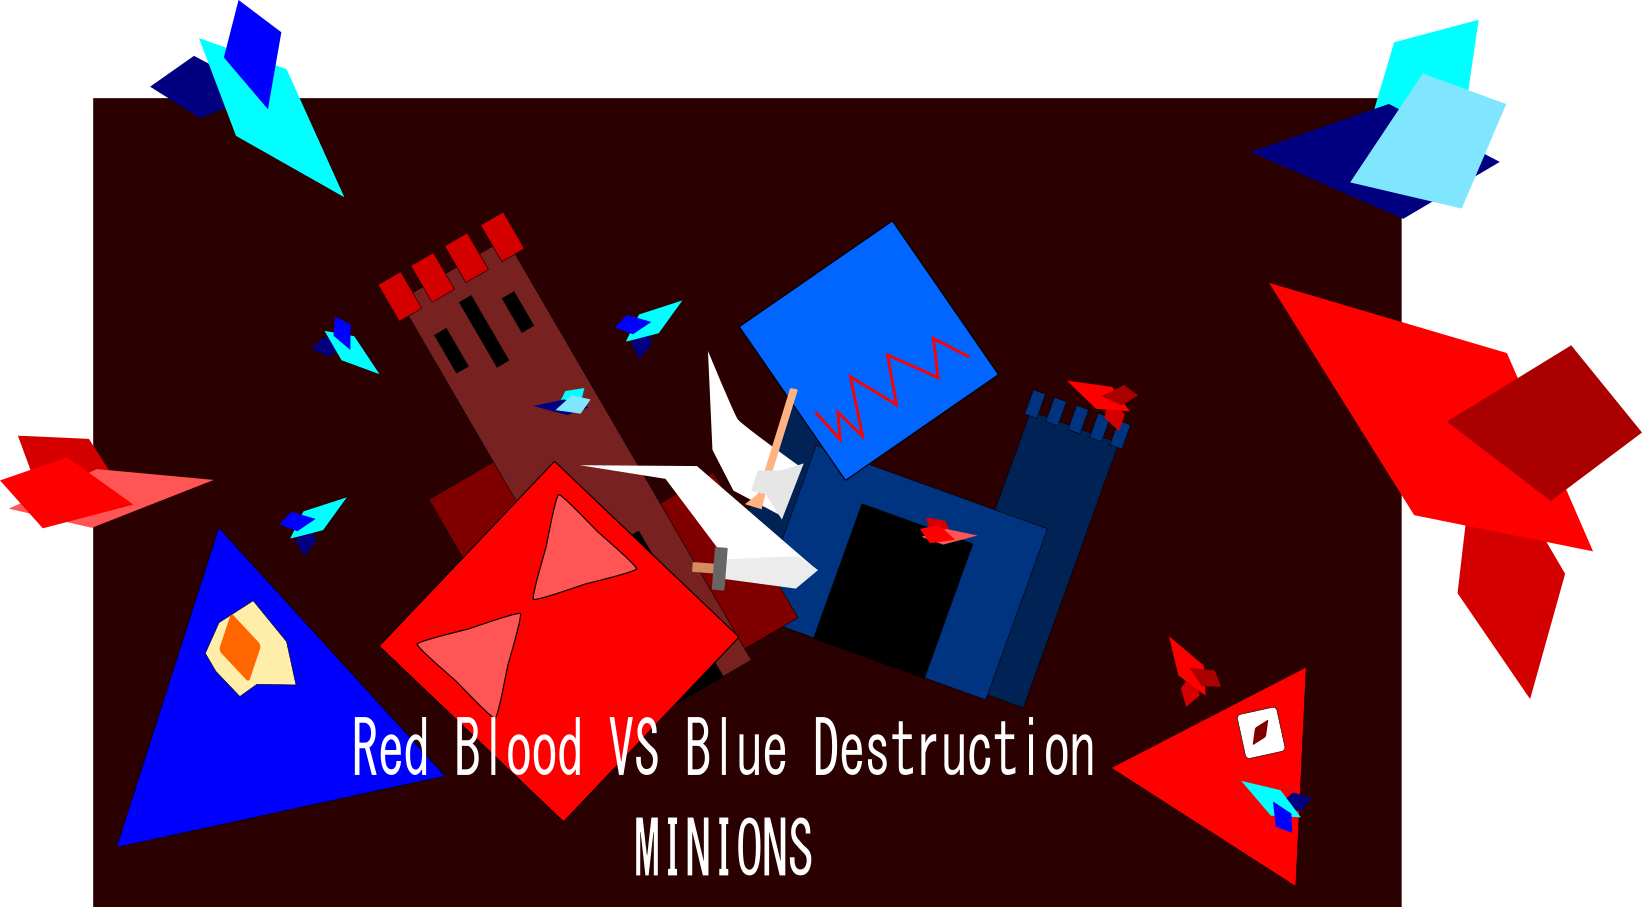 Red Blood VS Blue Destruction